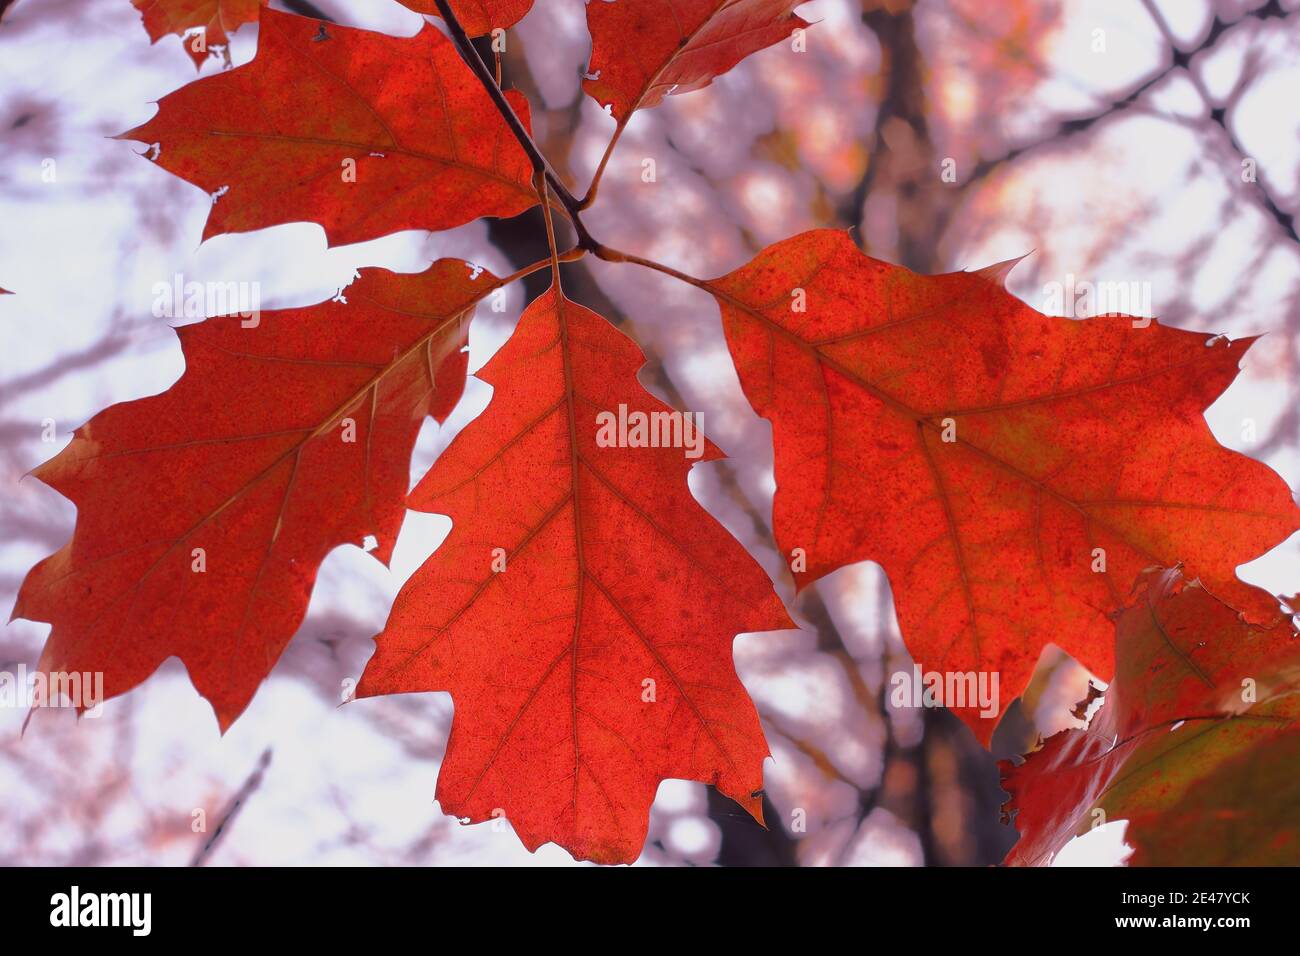 Herbst rote Eichenblätter auf verschwommenem blauen Himmel Hintergrund Stockfoto